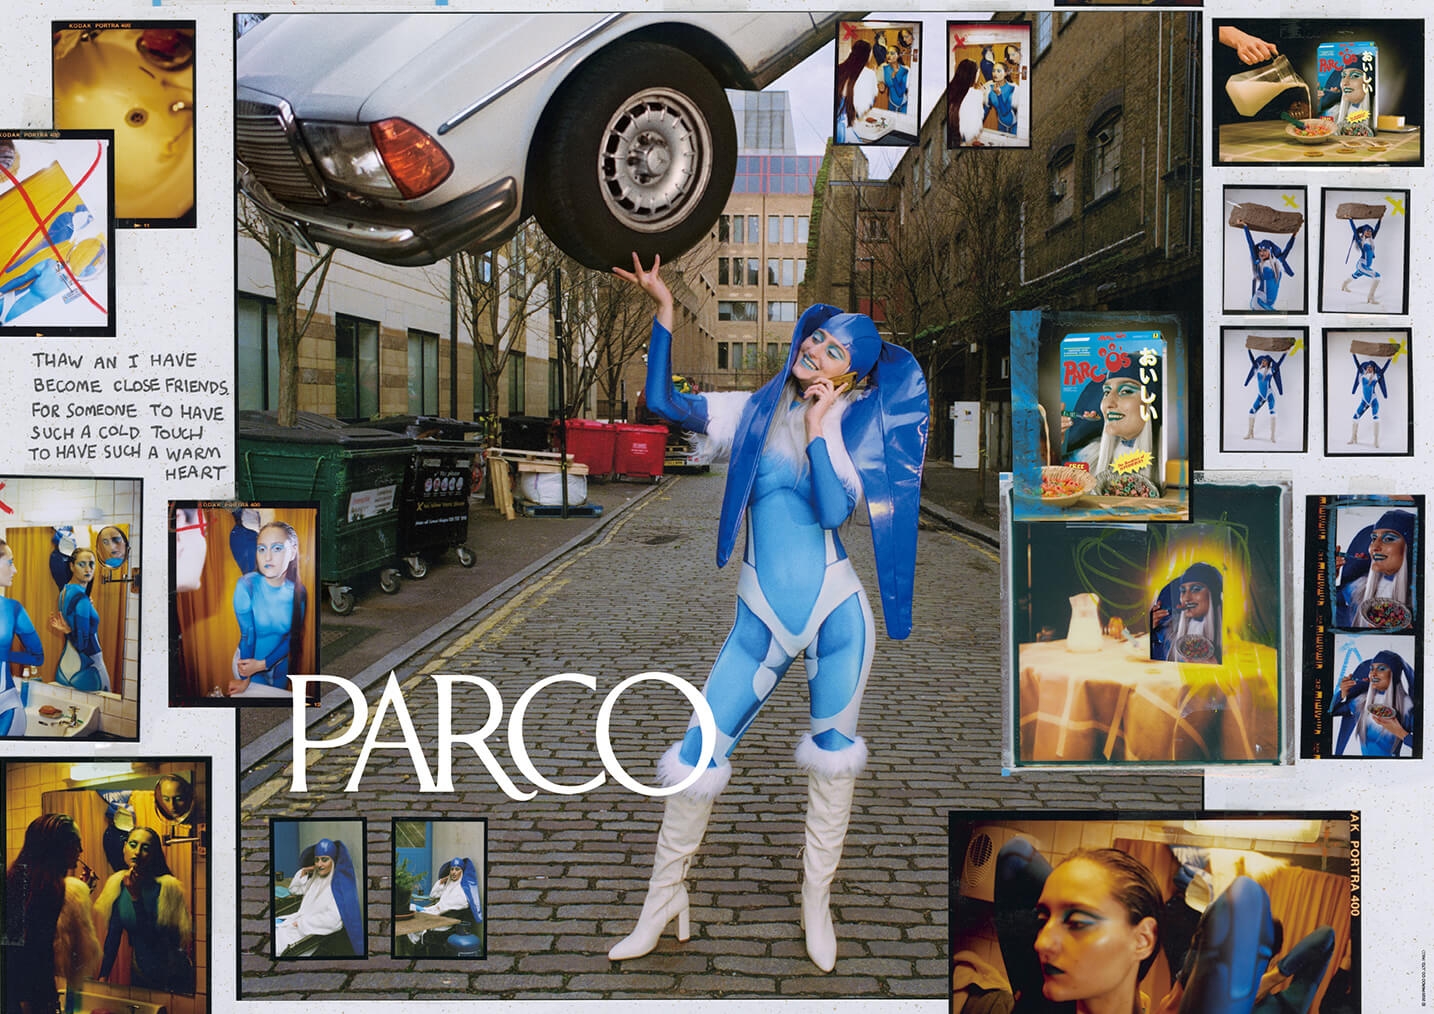 # 四季英雄展現創造精神：PARCO 釋出 2020 年秋冬形象廣告 4